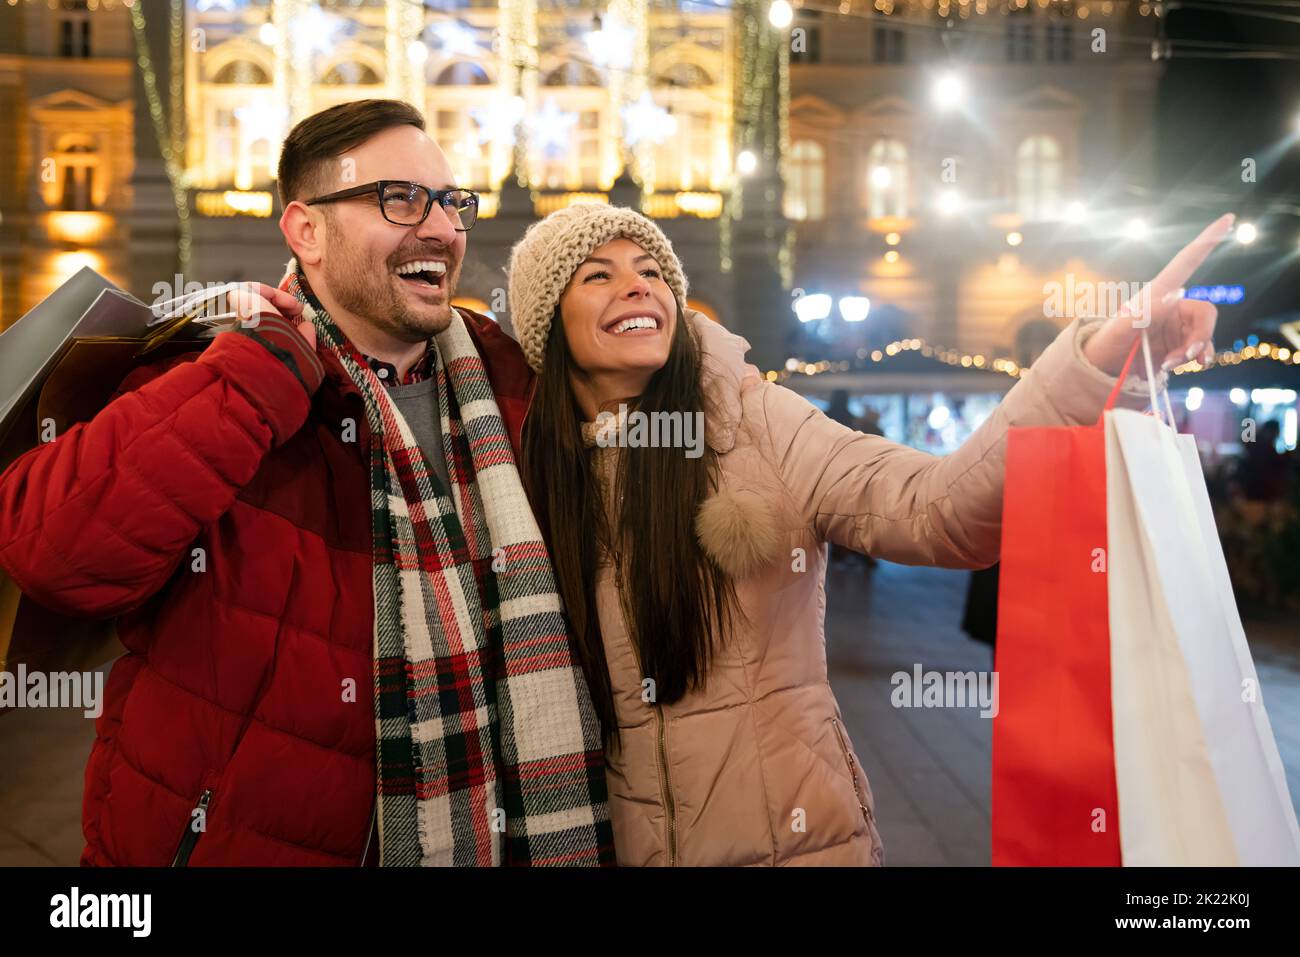 Glückliches Paar, das zusammen Spaß beim Weihnachtseinkauf hat. Urlaub präsentieren Menschen Glück Konzept Stockfoto